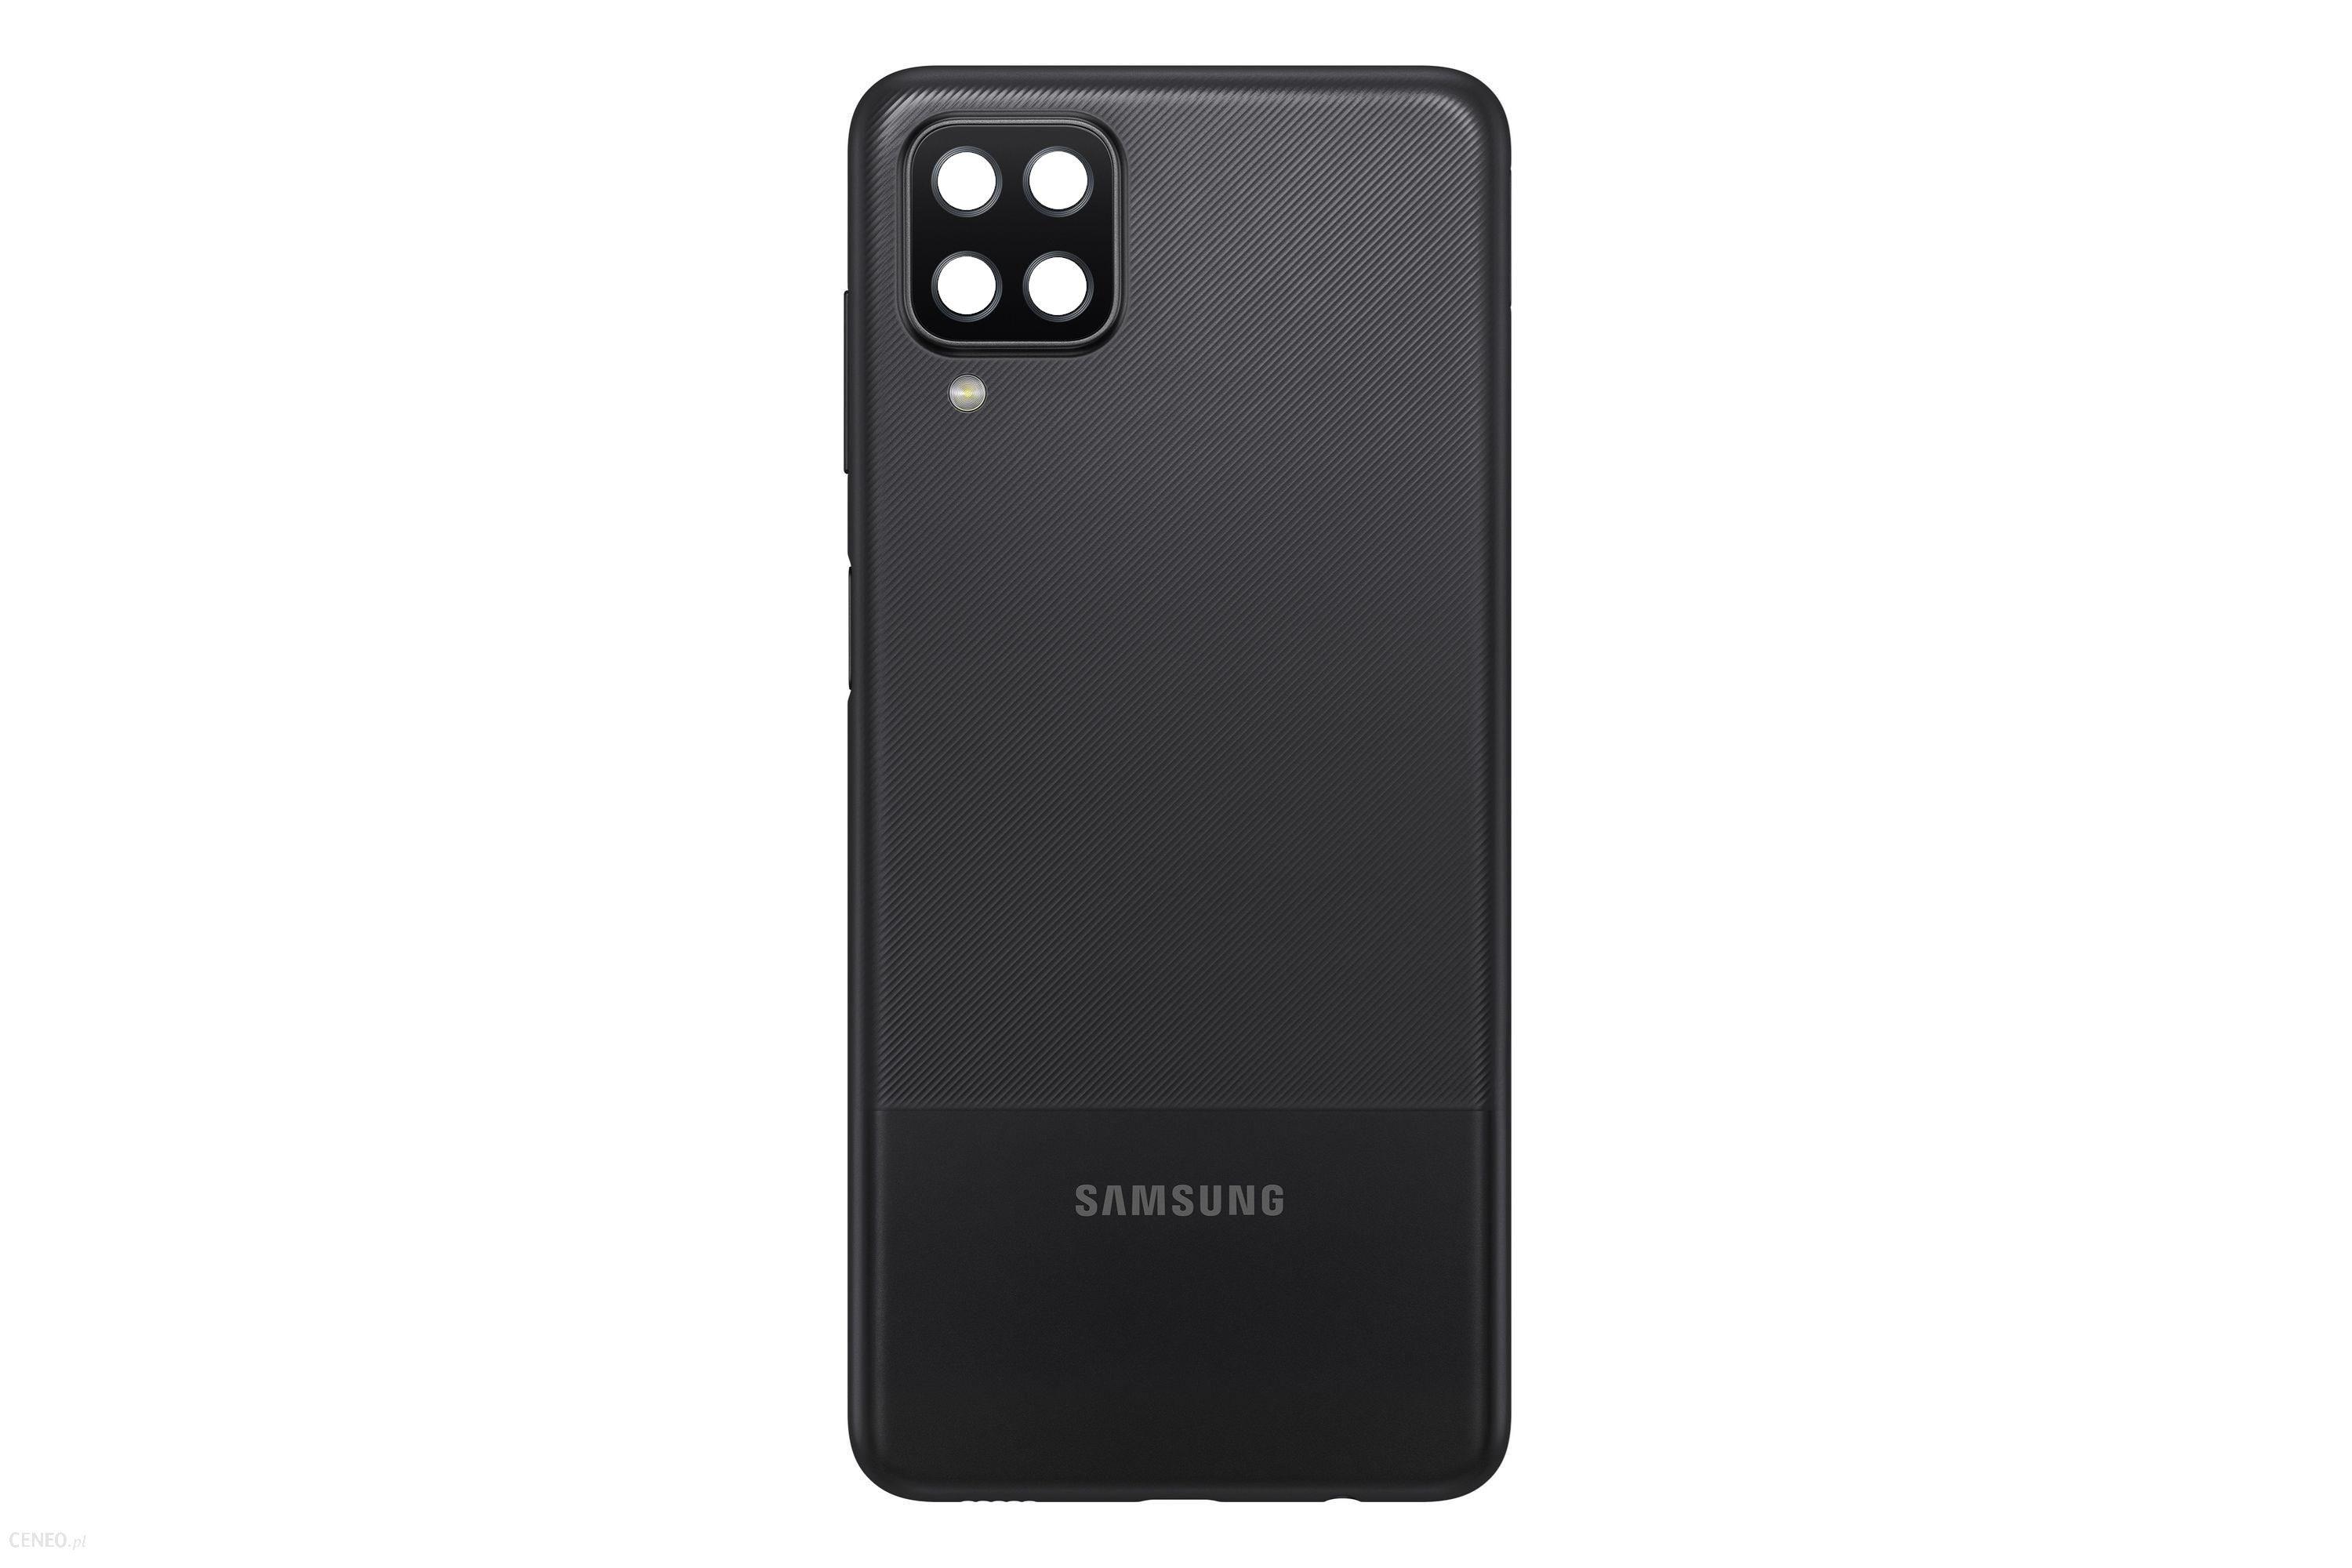 Originál kryt baterie Samsung Galaxy A12 SM-A125 černý demontovaný díl